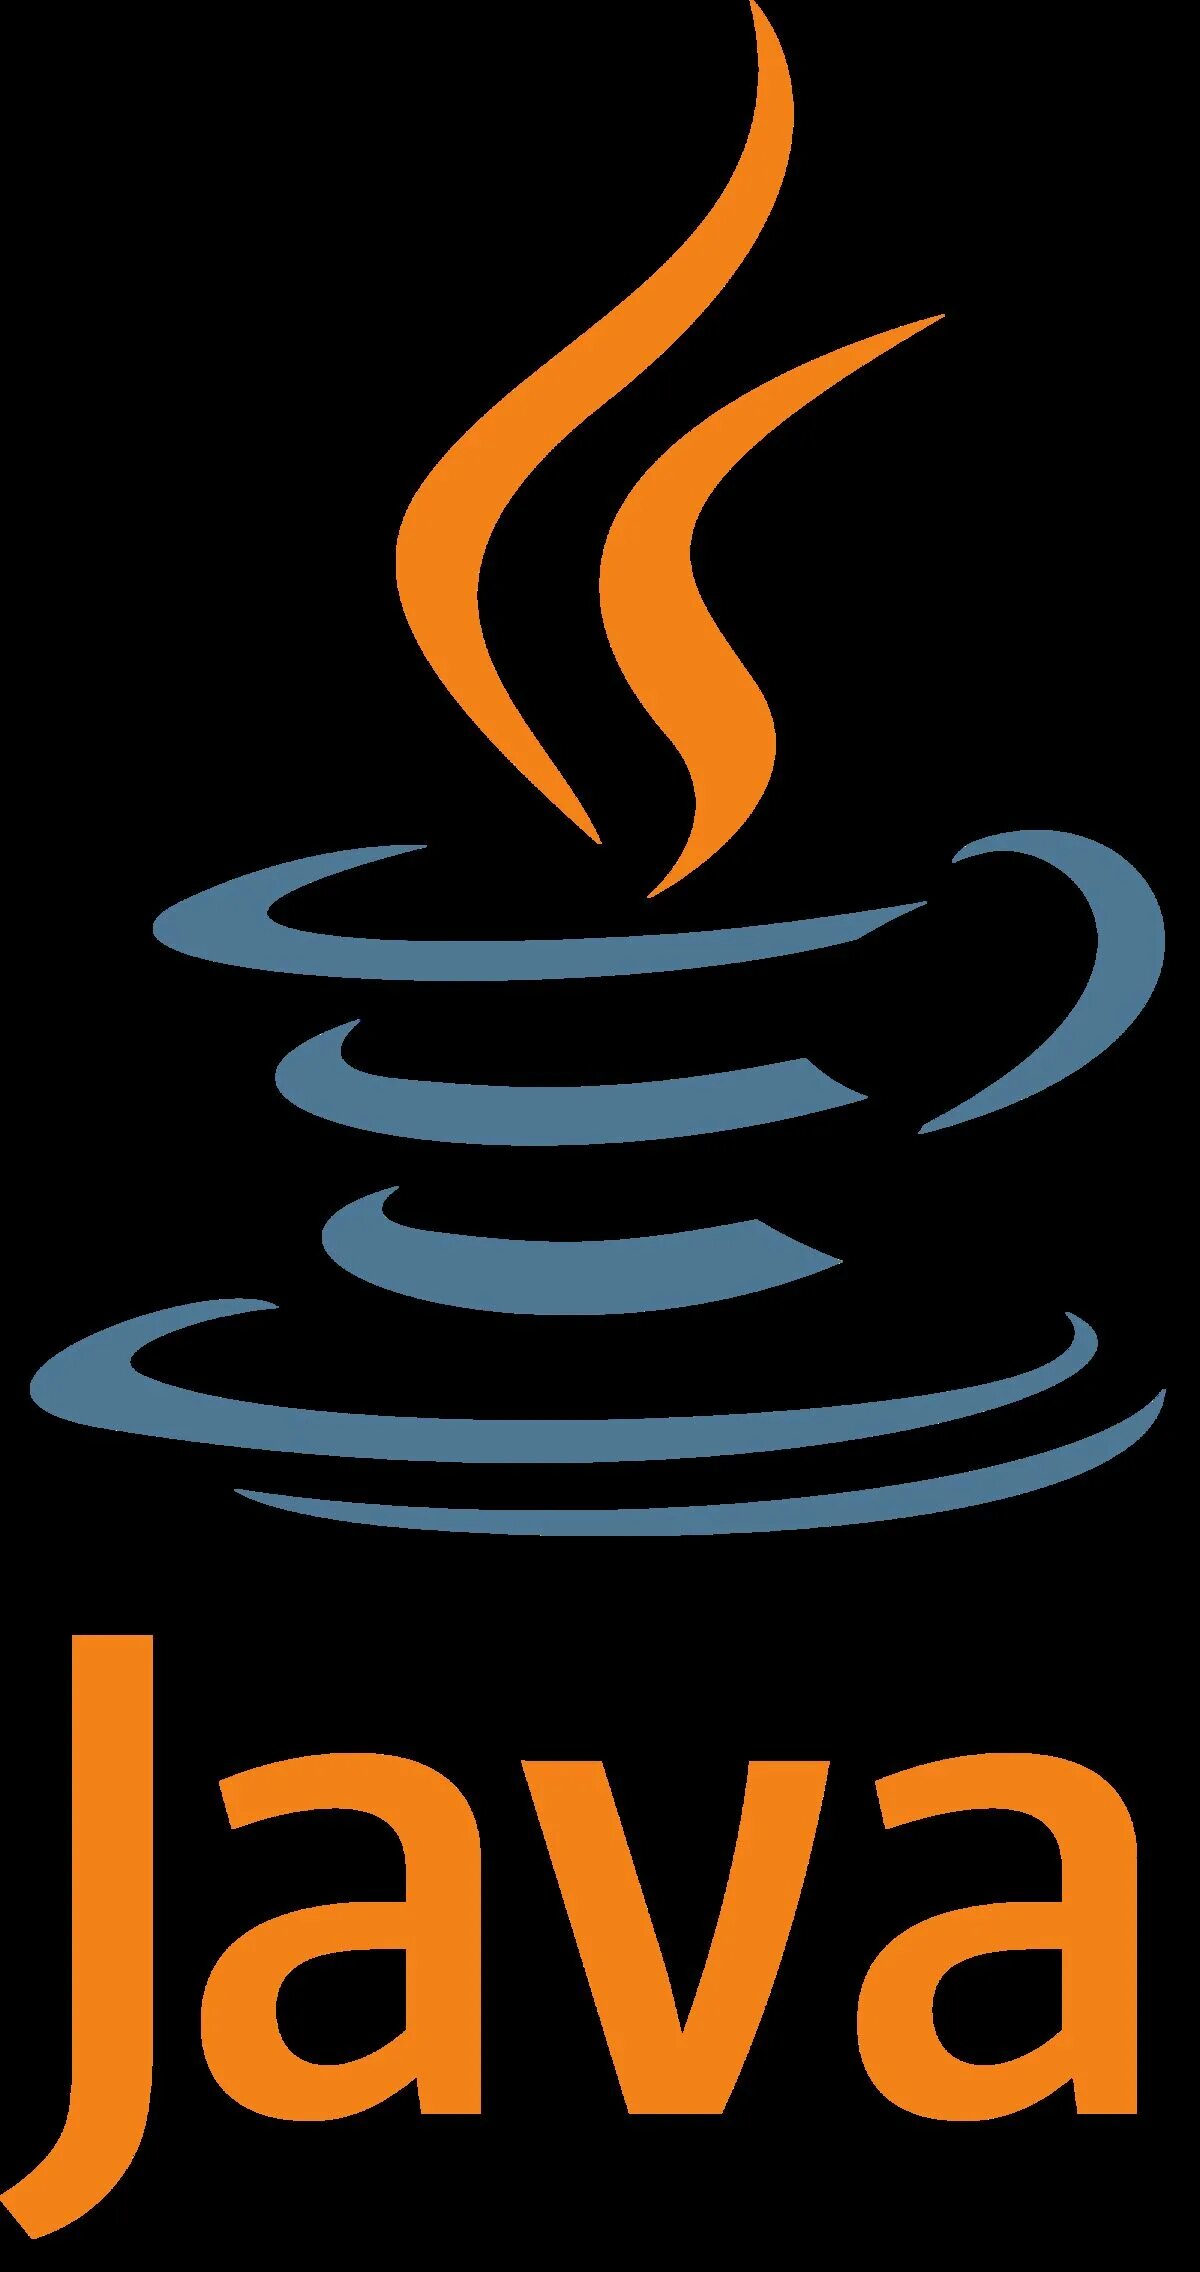 Java язык программирования logo. Значок java. Java картинки. Логотип джава. Шаблоны java